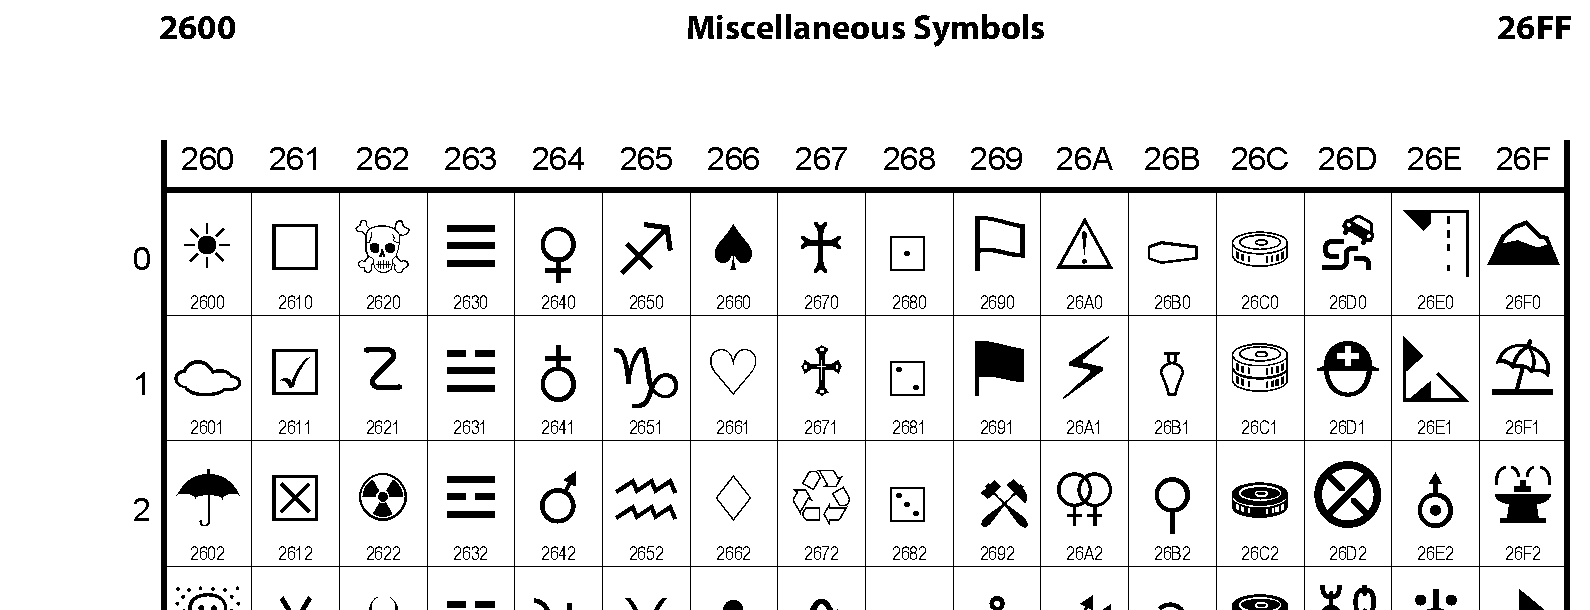 Unicode - Miscellaneous Symbols